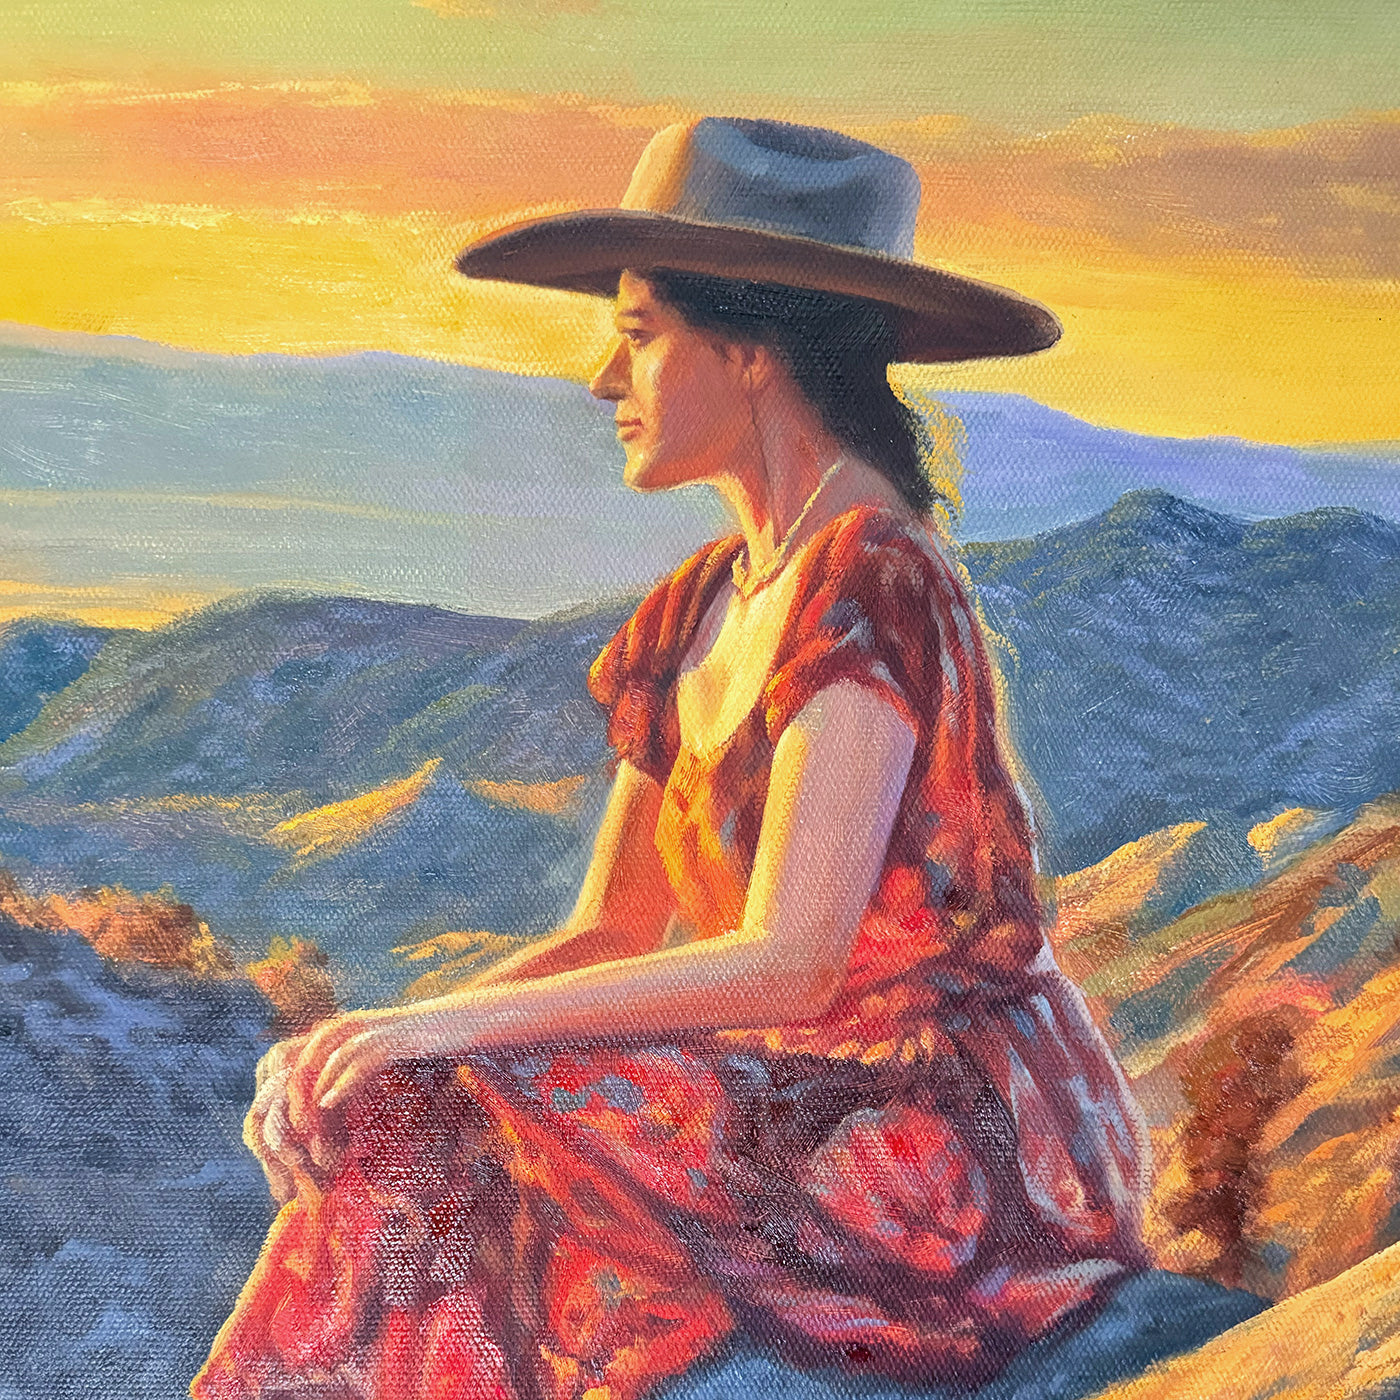 Desert Rock Woman